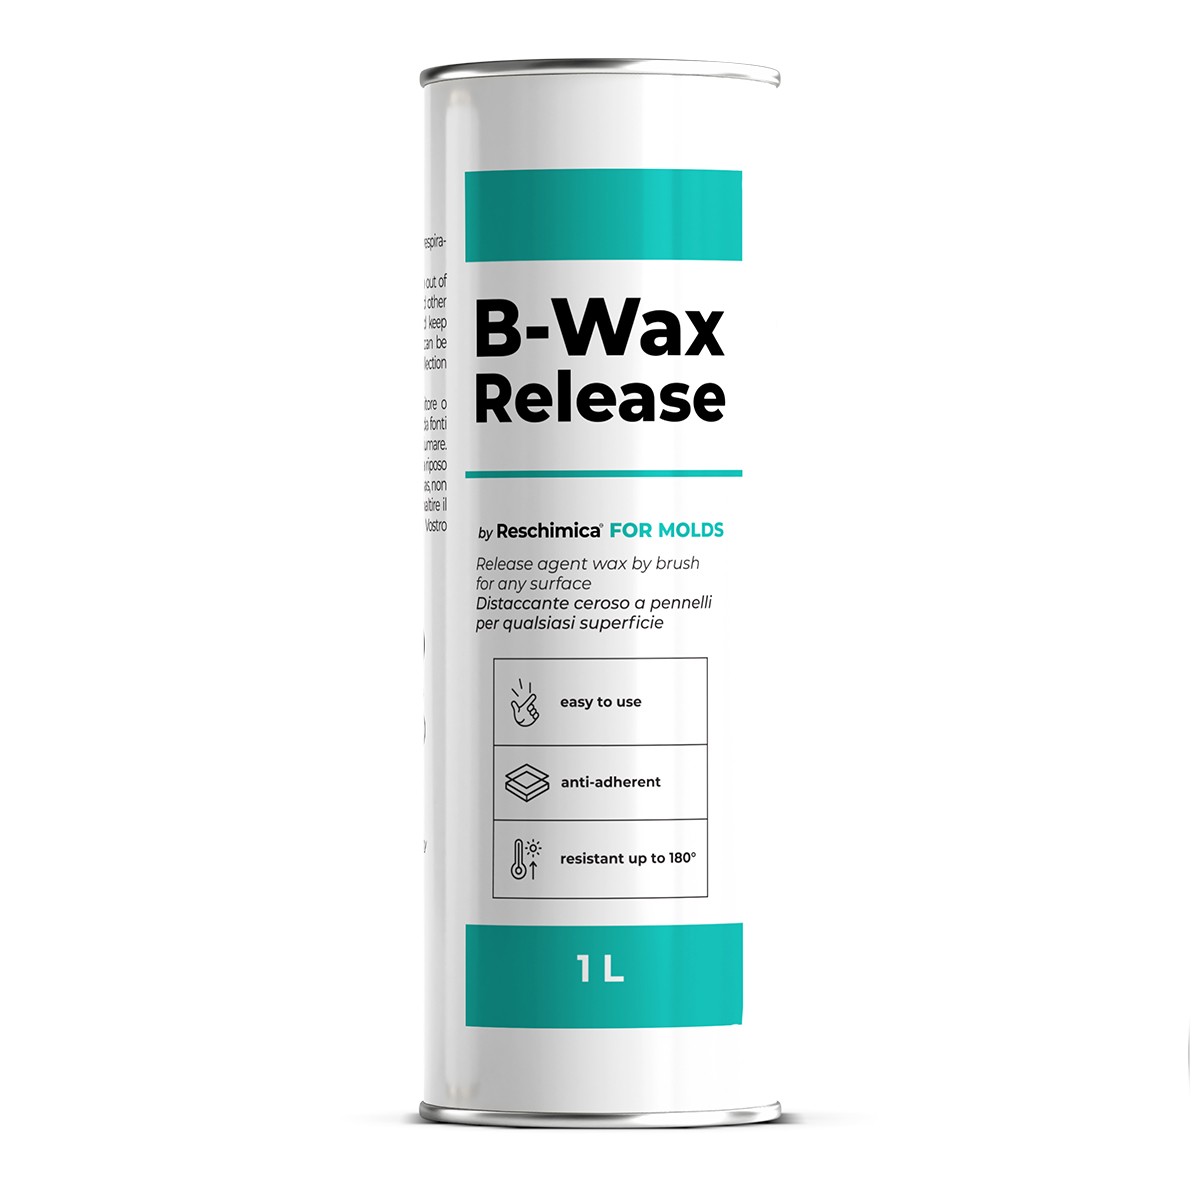 B-WAX RELEASE - Desmoldeante de brocha de alta calidad, evita la adherencia entre cauchos de silicona y resinas